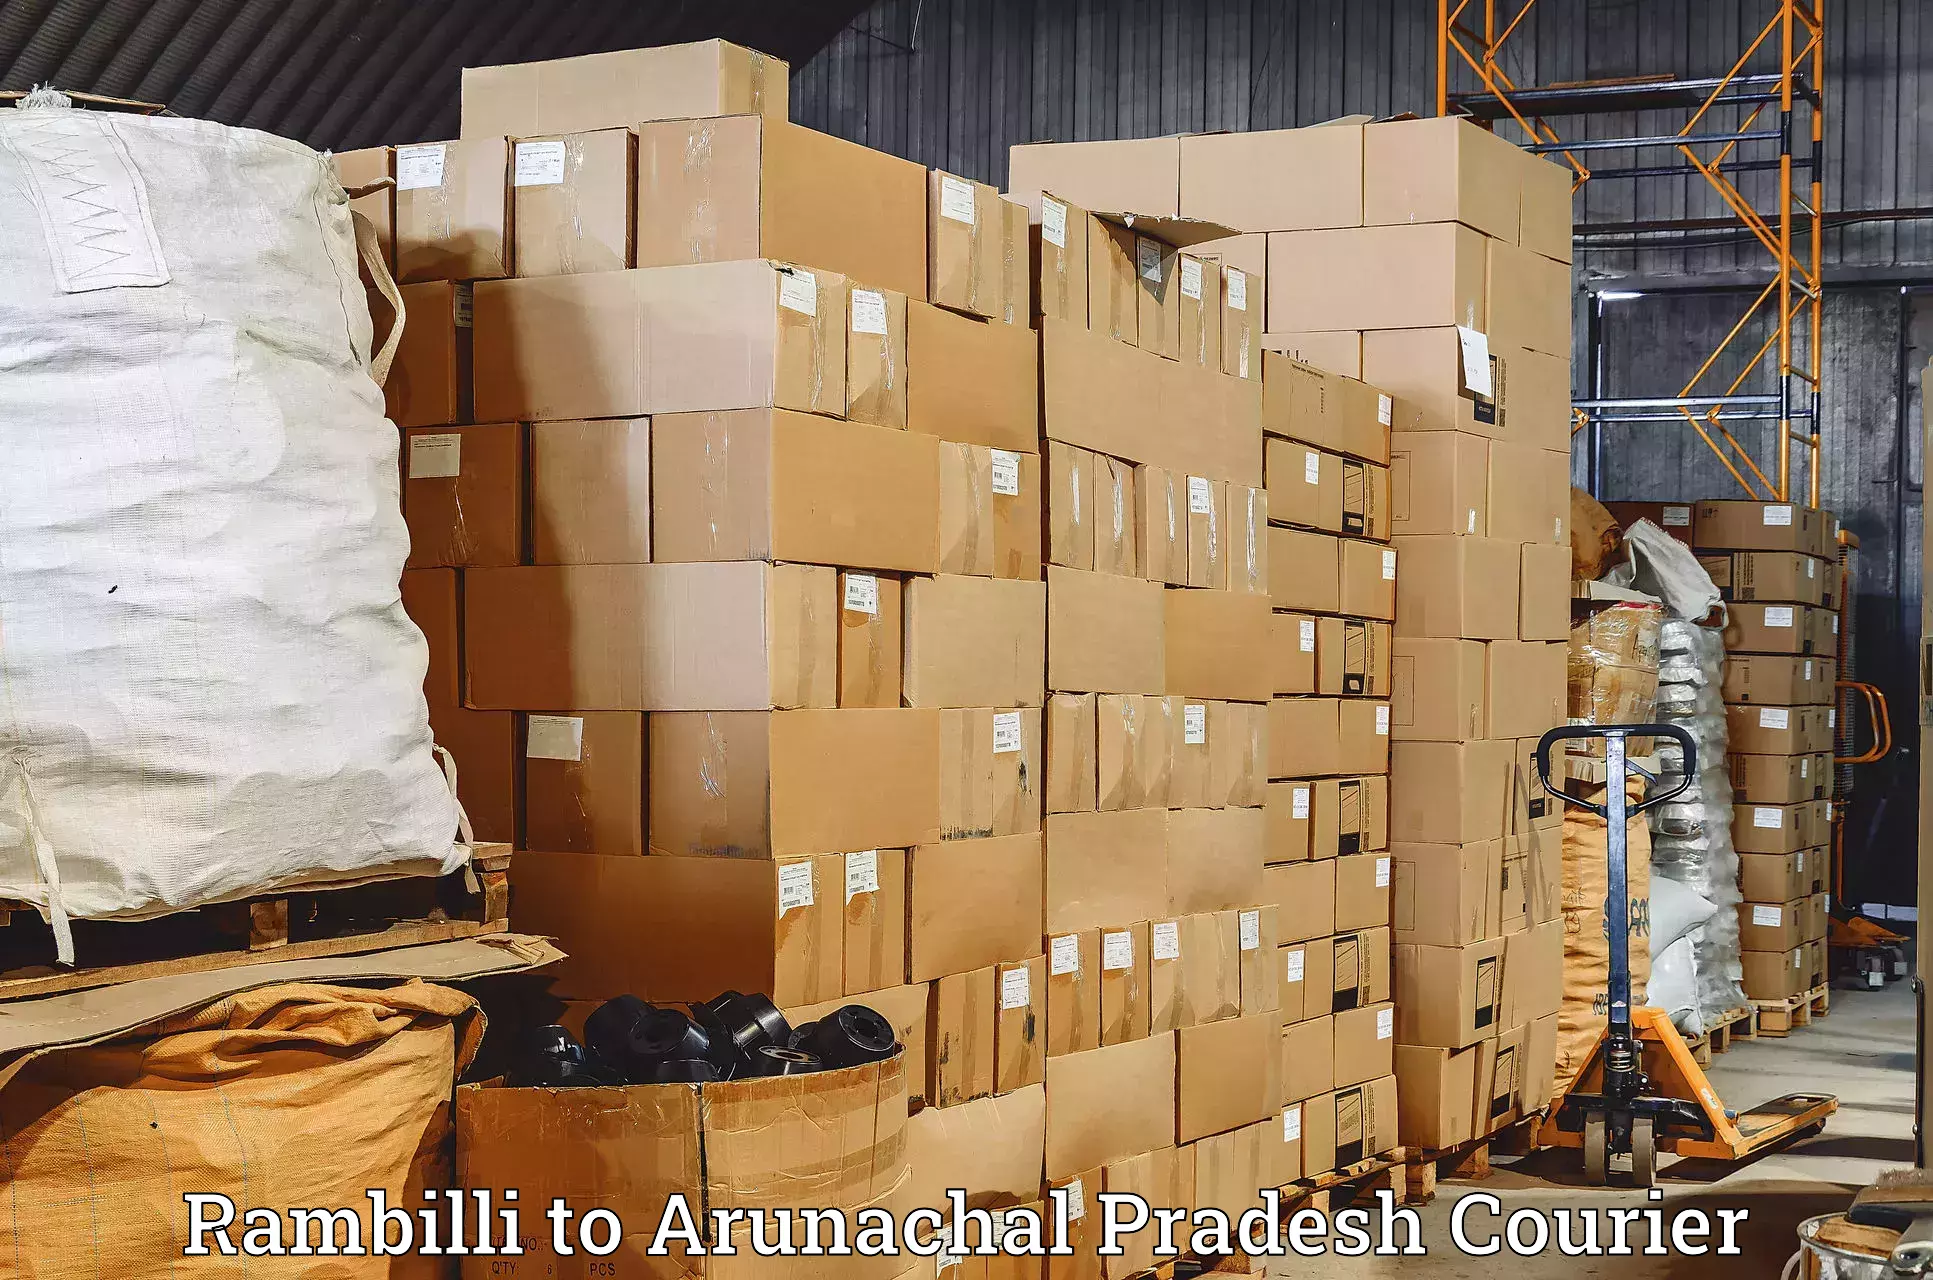 Digital courier platforms Rambilli to Arunachal Pradesh